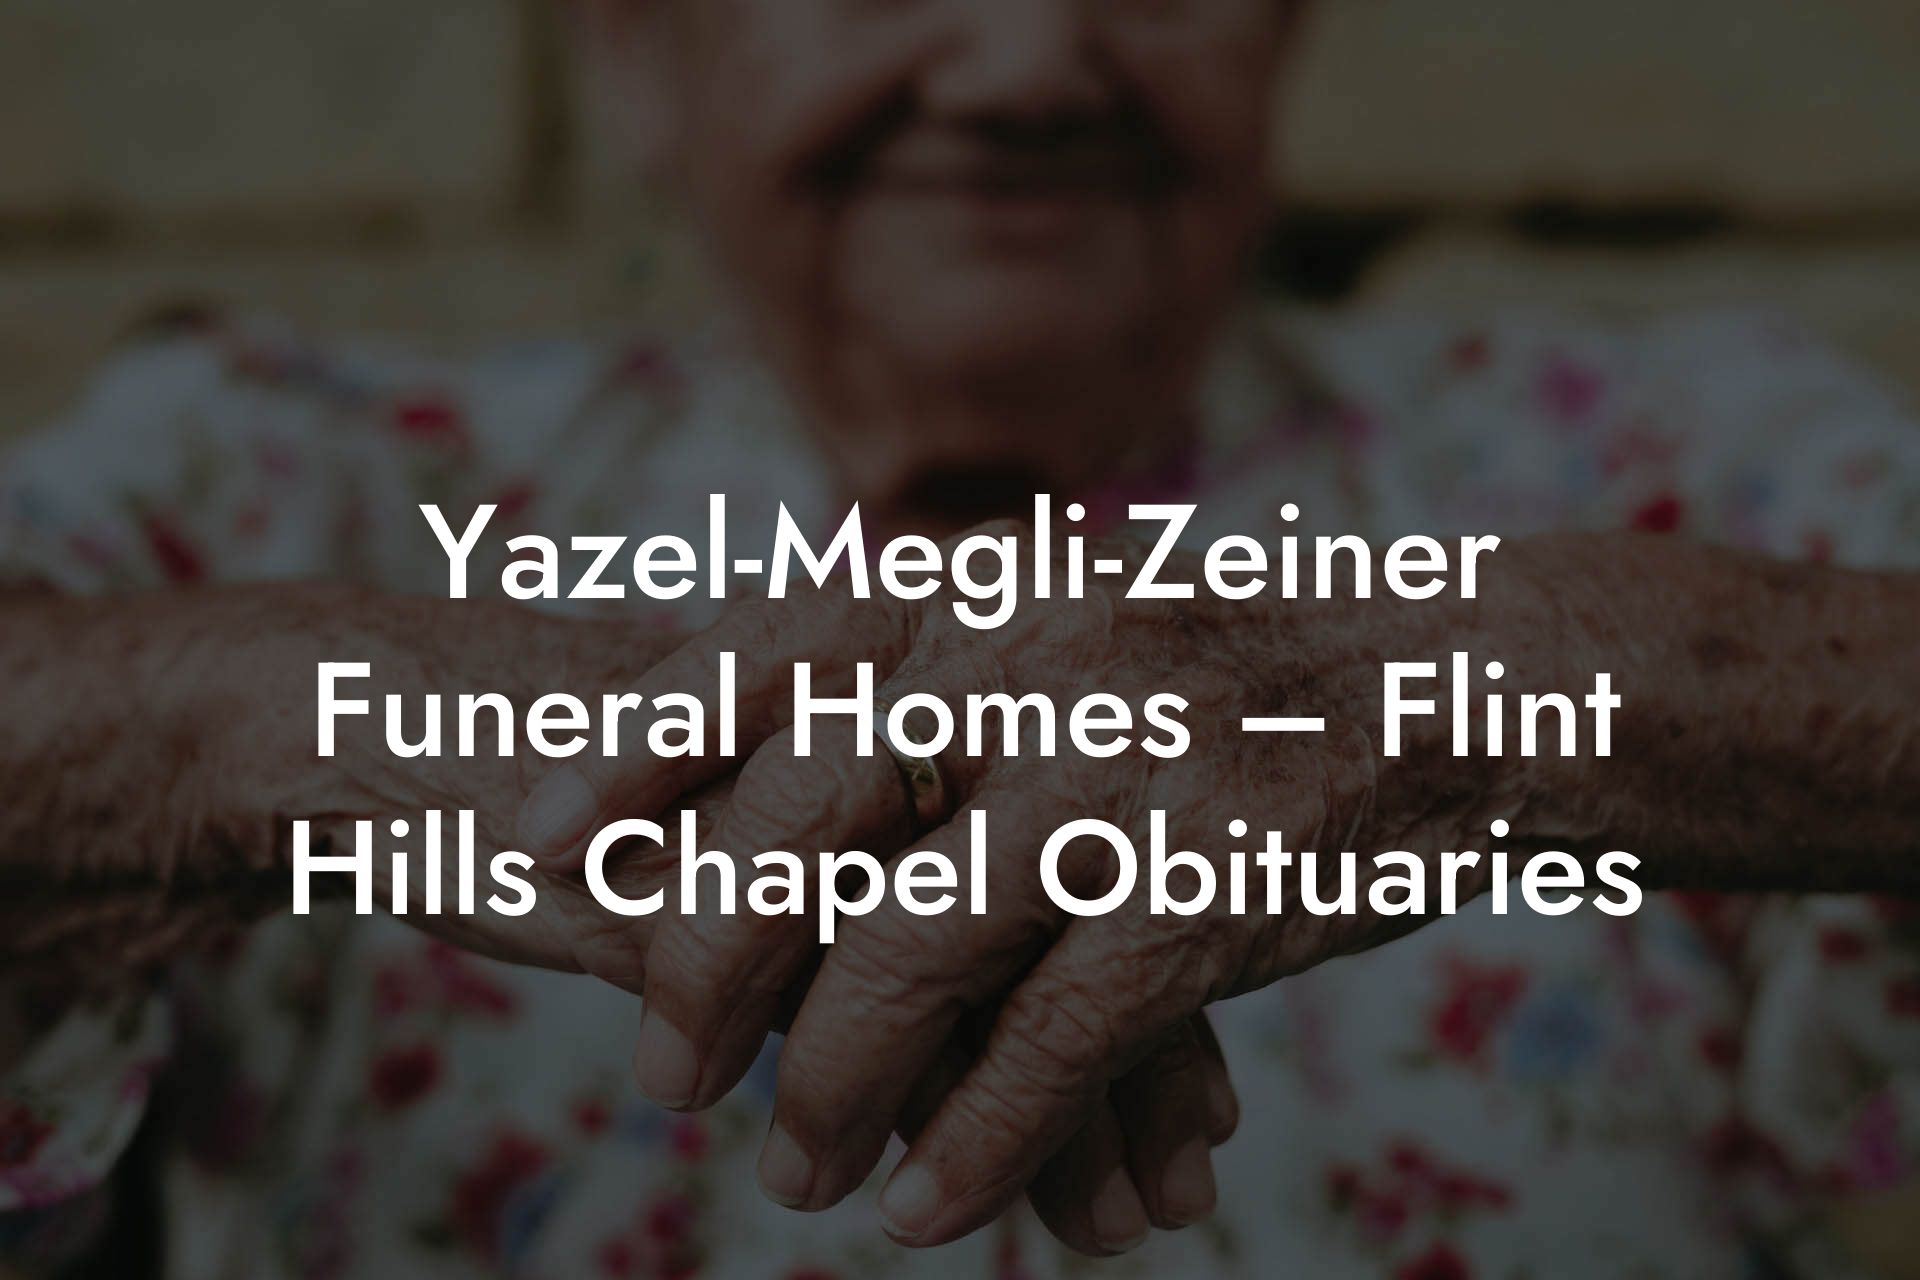 Yazel-Megli-Zeiner Funeral Homes – Flint Hills Chapel Obituaries